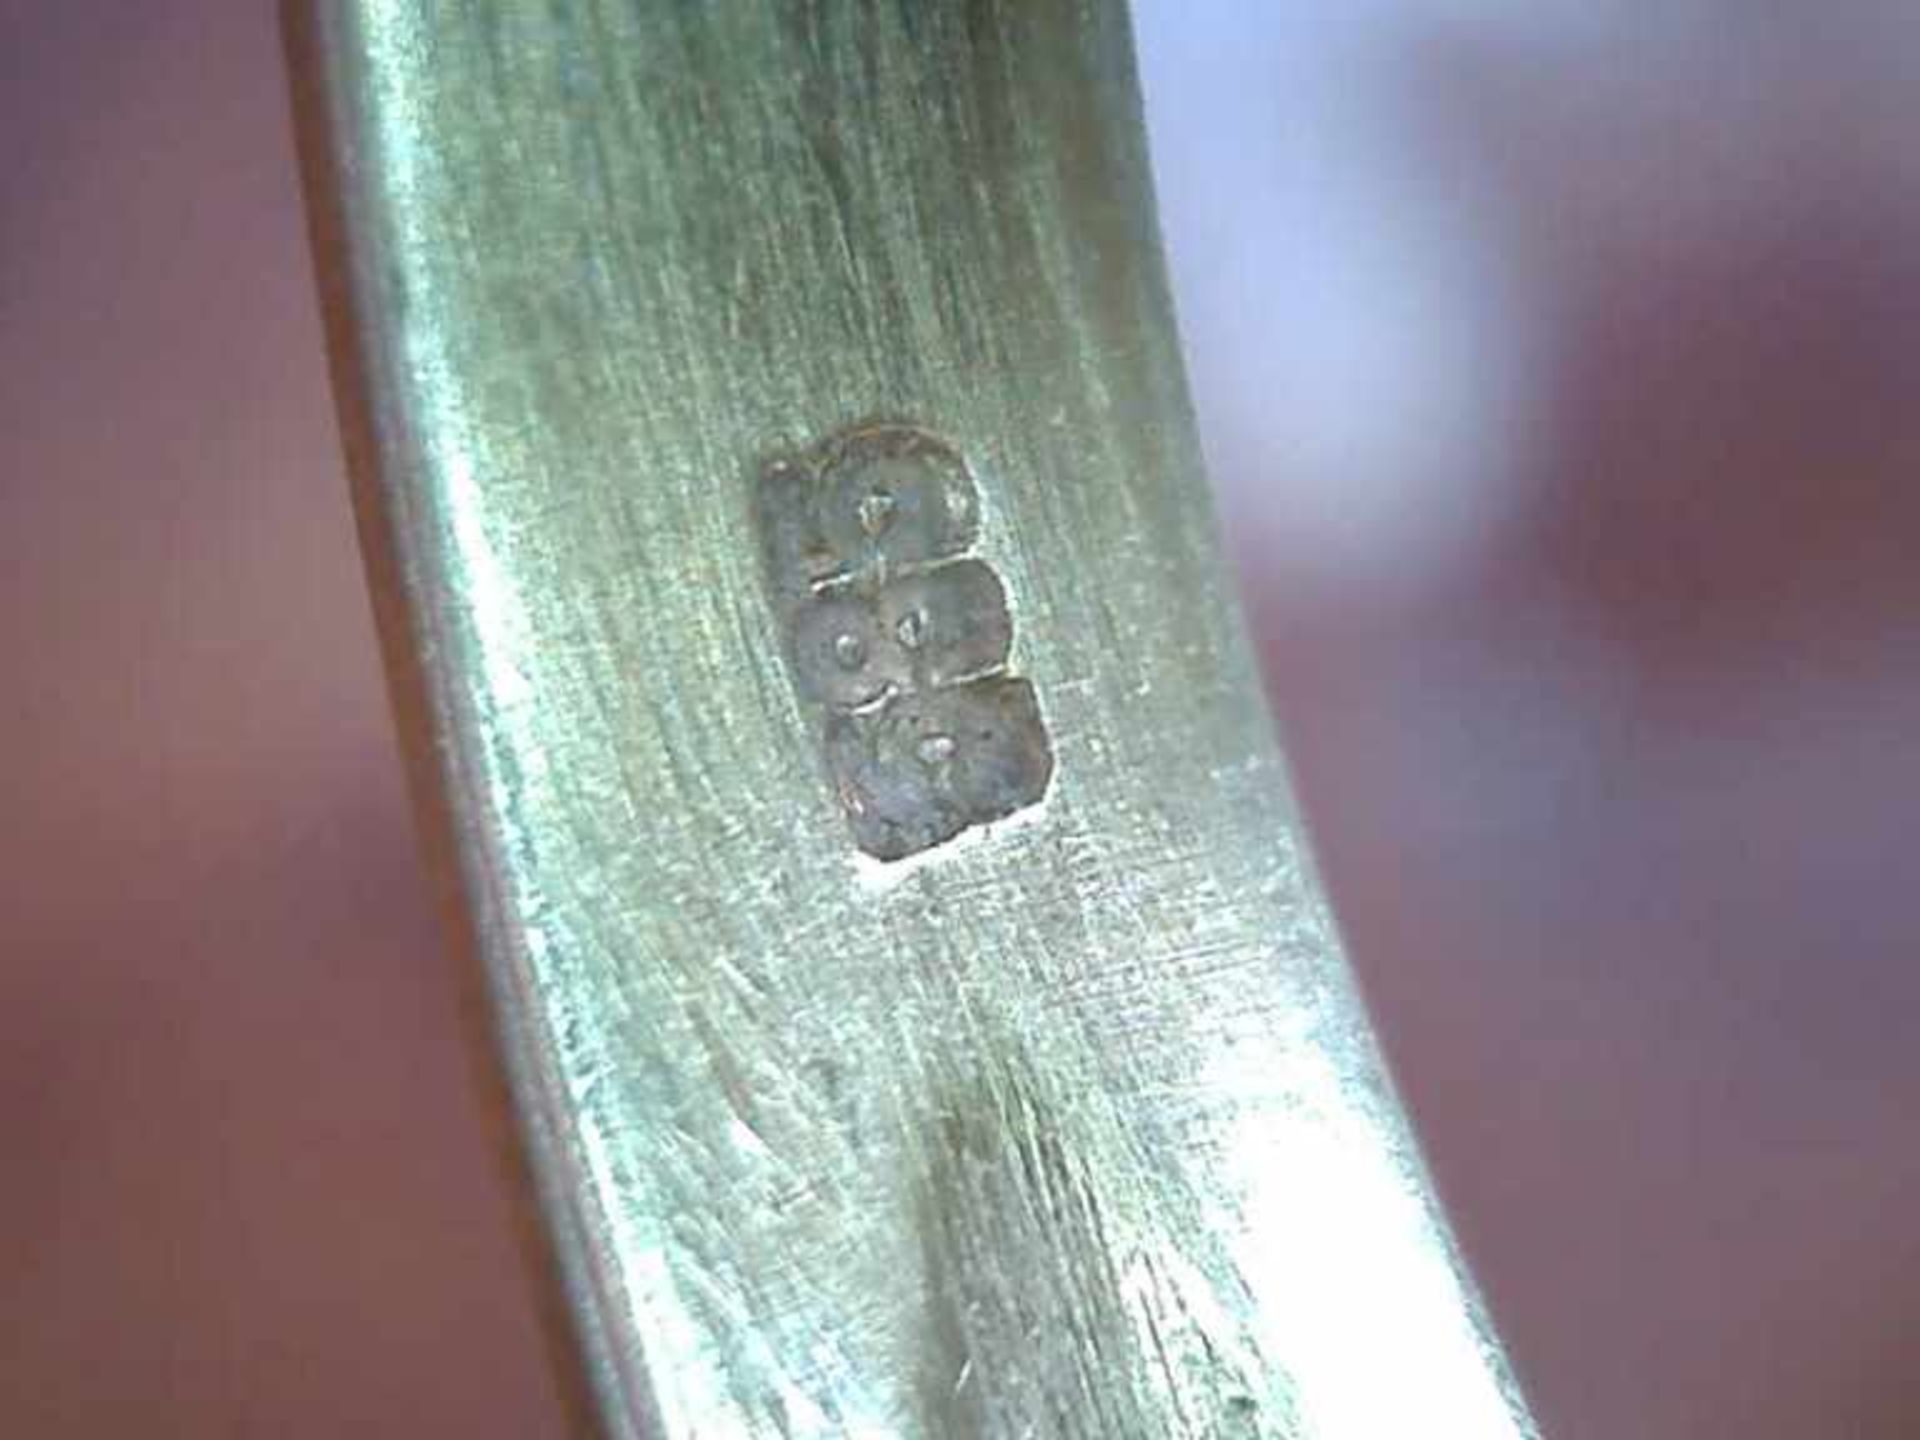 Damenring 585er GG, 3,6 g, runder Ringkopf mit einem gefassten Brillanten (ca. 0,16 ct.), RG 55 - Image 2 of 2